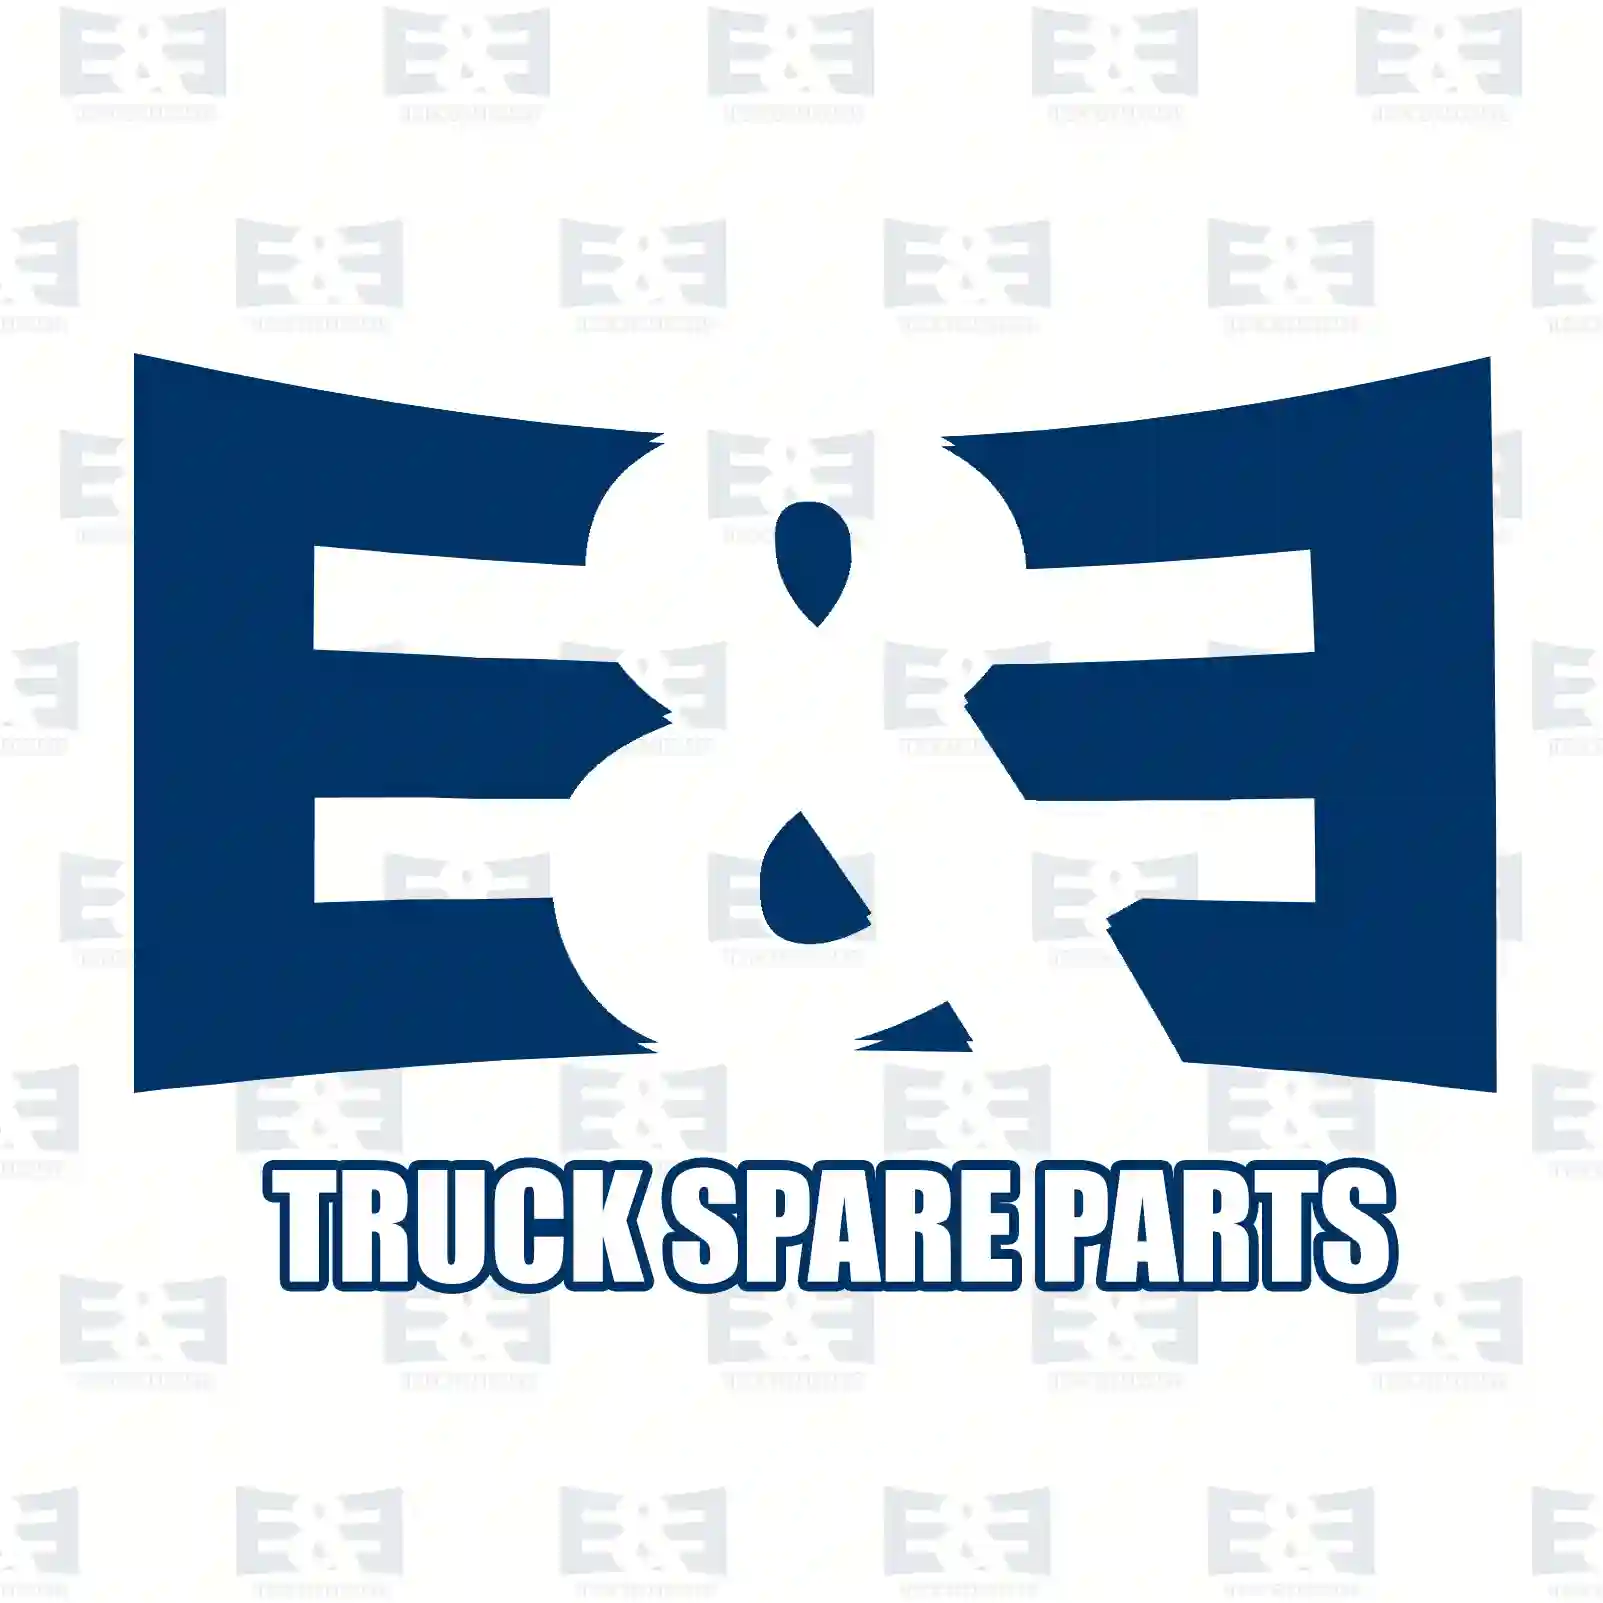 Rocker arm, 2E2200464, 1120750, XS7Q-6529-A1C ||  2E2200464 E&E Truck Spare Parts | Truck Spare Parts, Auotomotive Spare Parts Rocker arm, 2E2200464, 1120750, XS7Q-6529-A1C ||  2E2200464 E&E Truck Spare Parts | Truck Spare Parts, Auotomotive Spare Parts